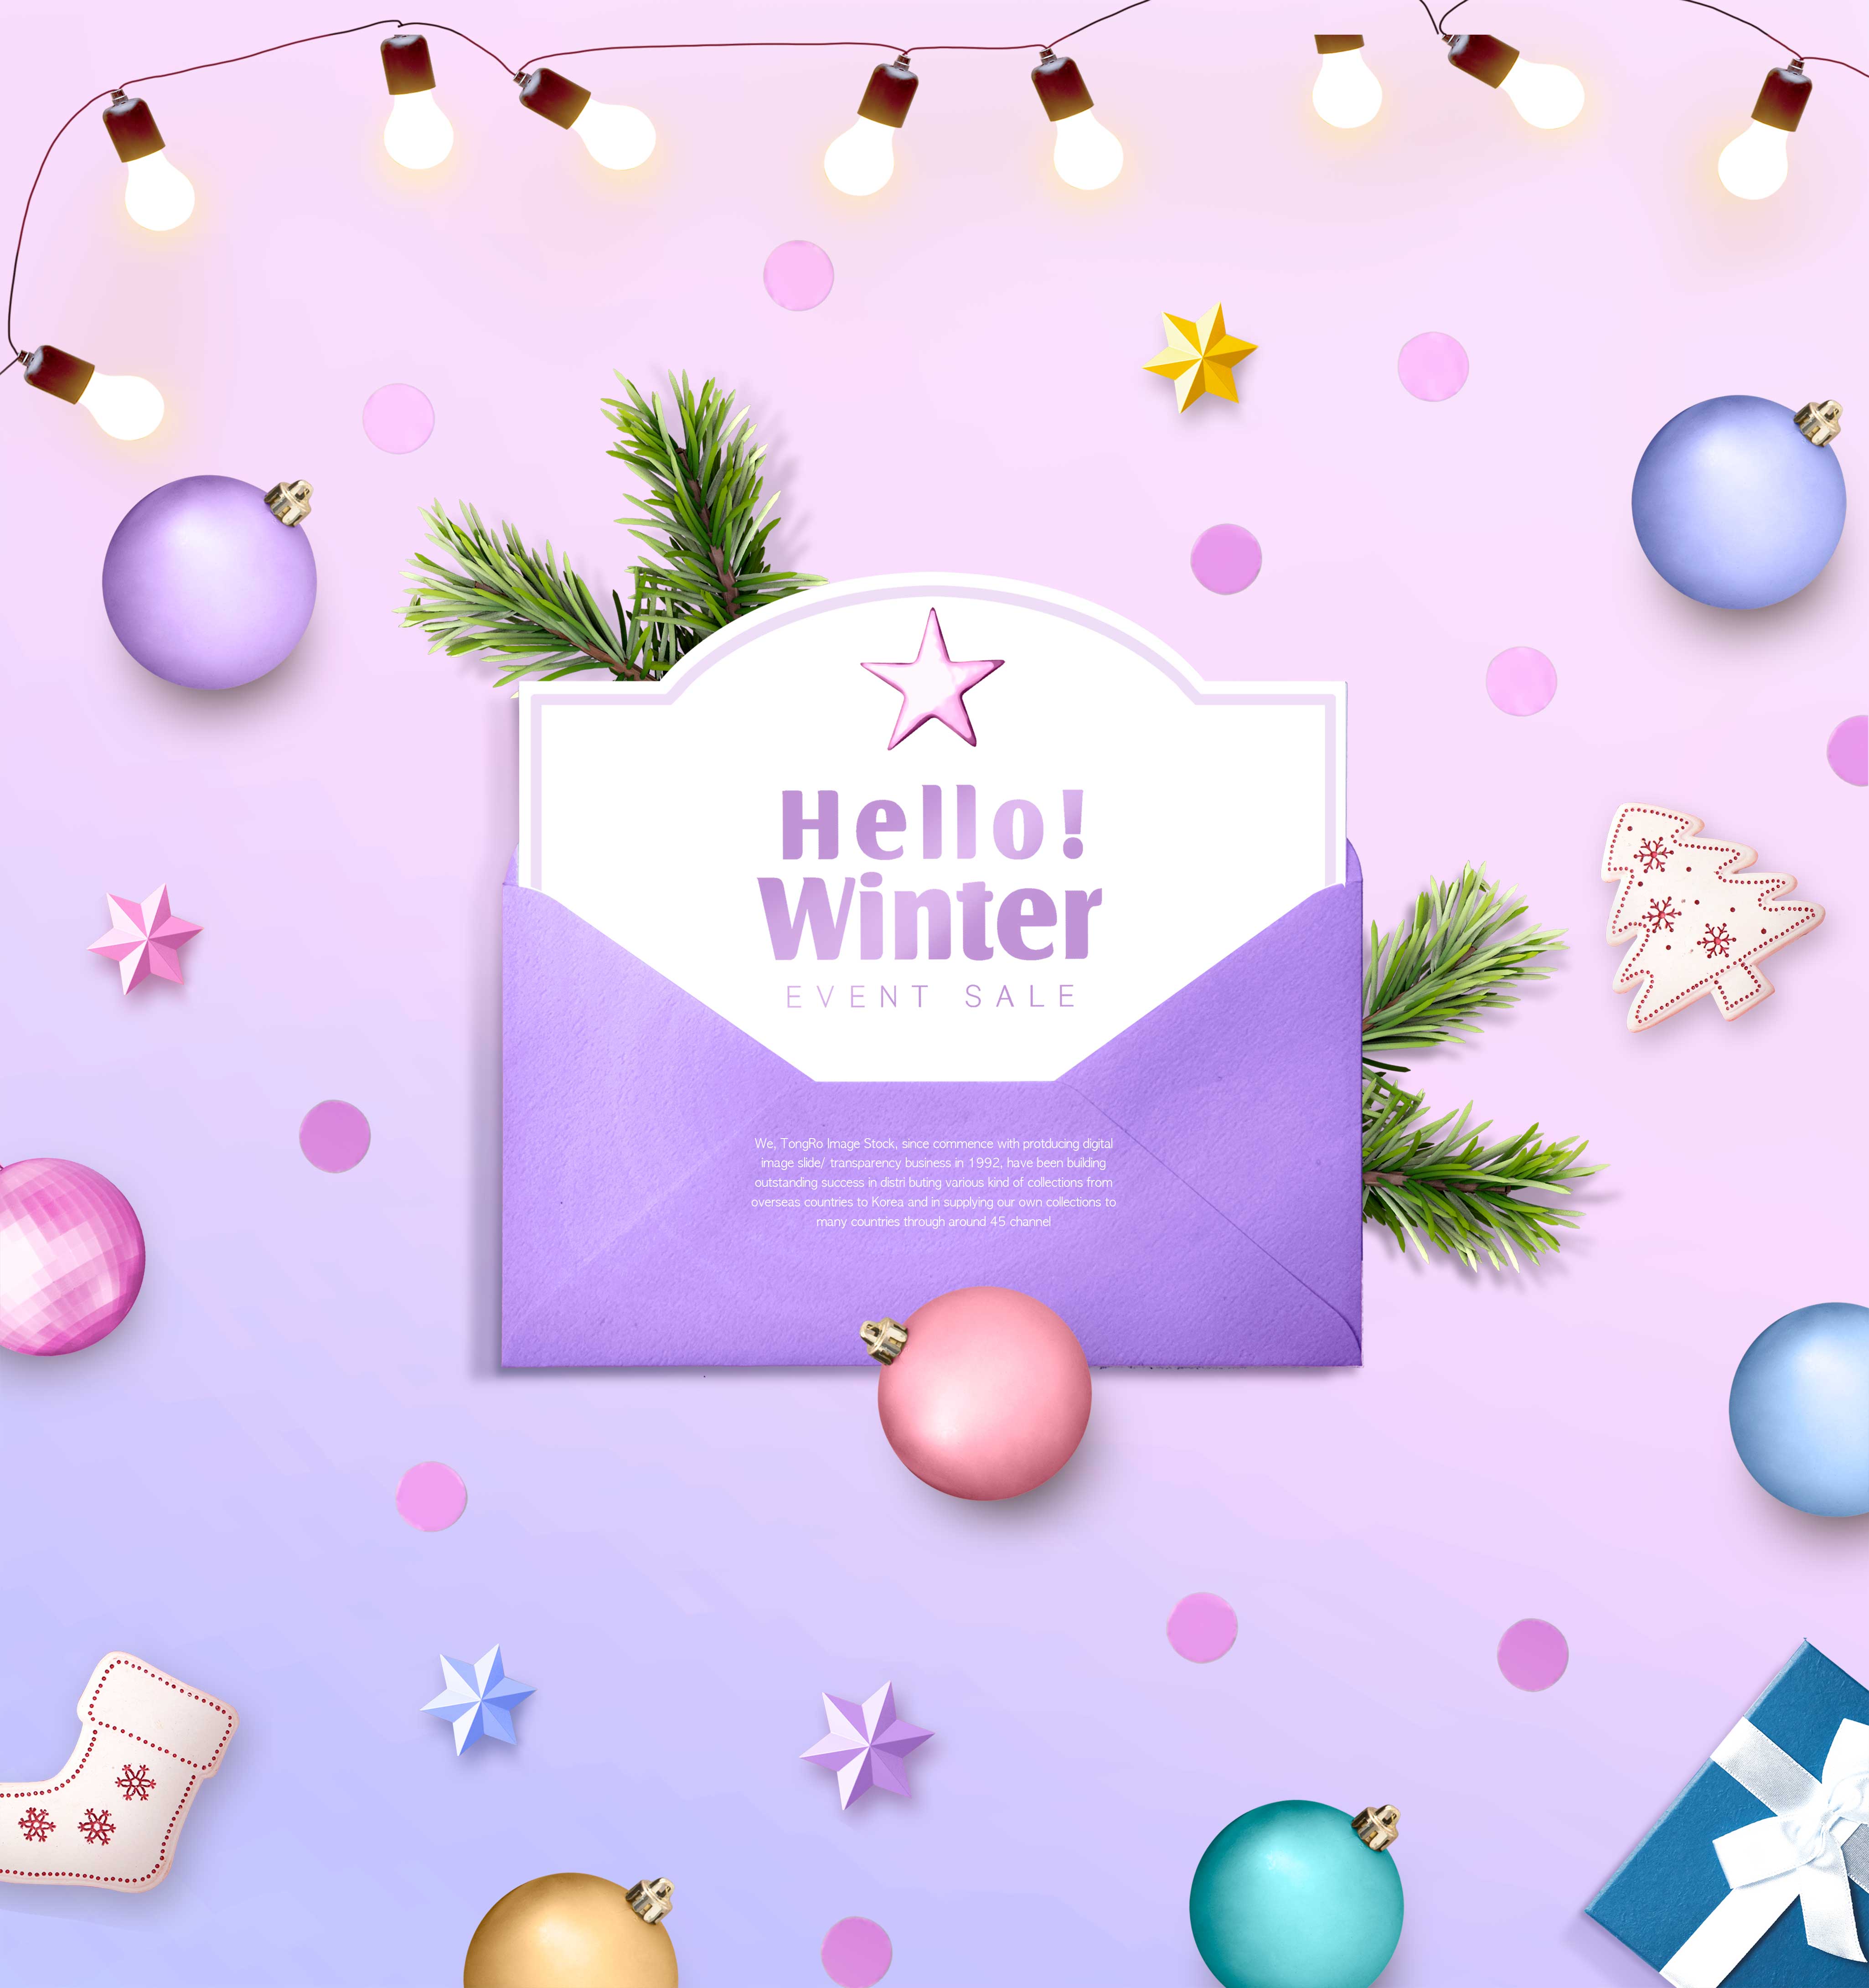 圣诞活动促销冬季主题图形psd素材设计素材模板